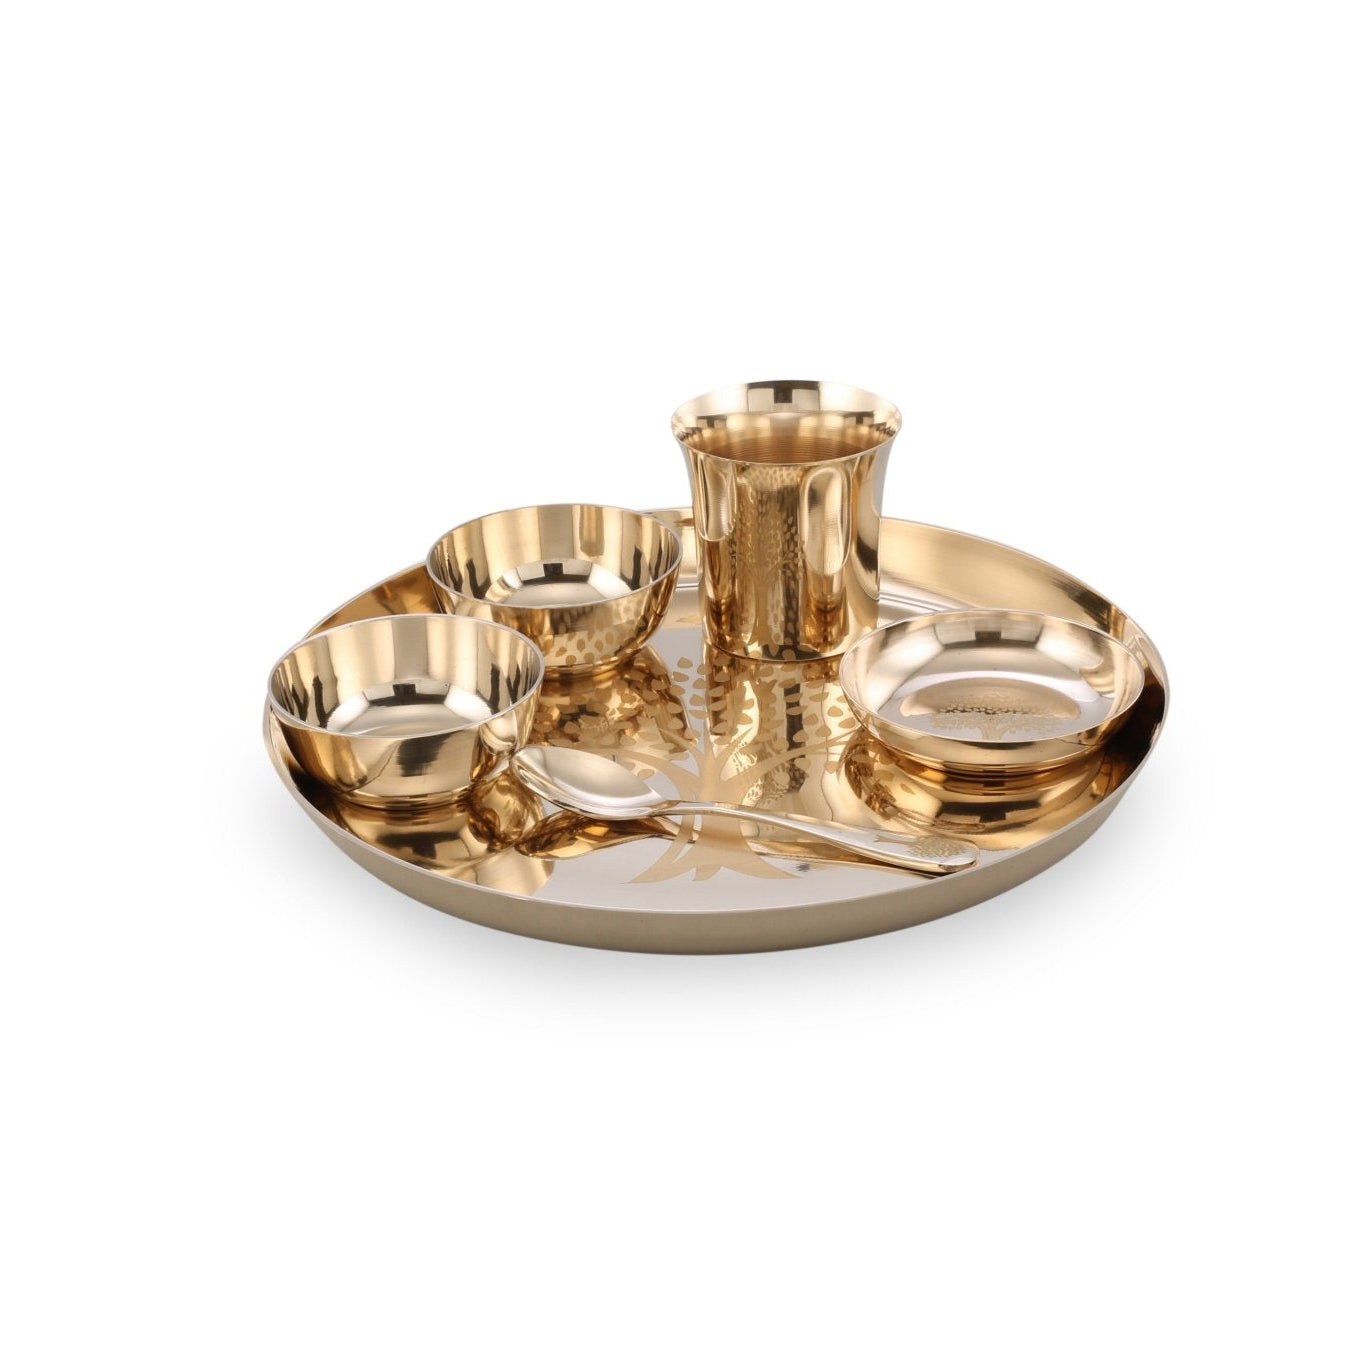 SAMA Homes - bronze kansa dinner set engraved glossy